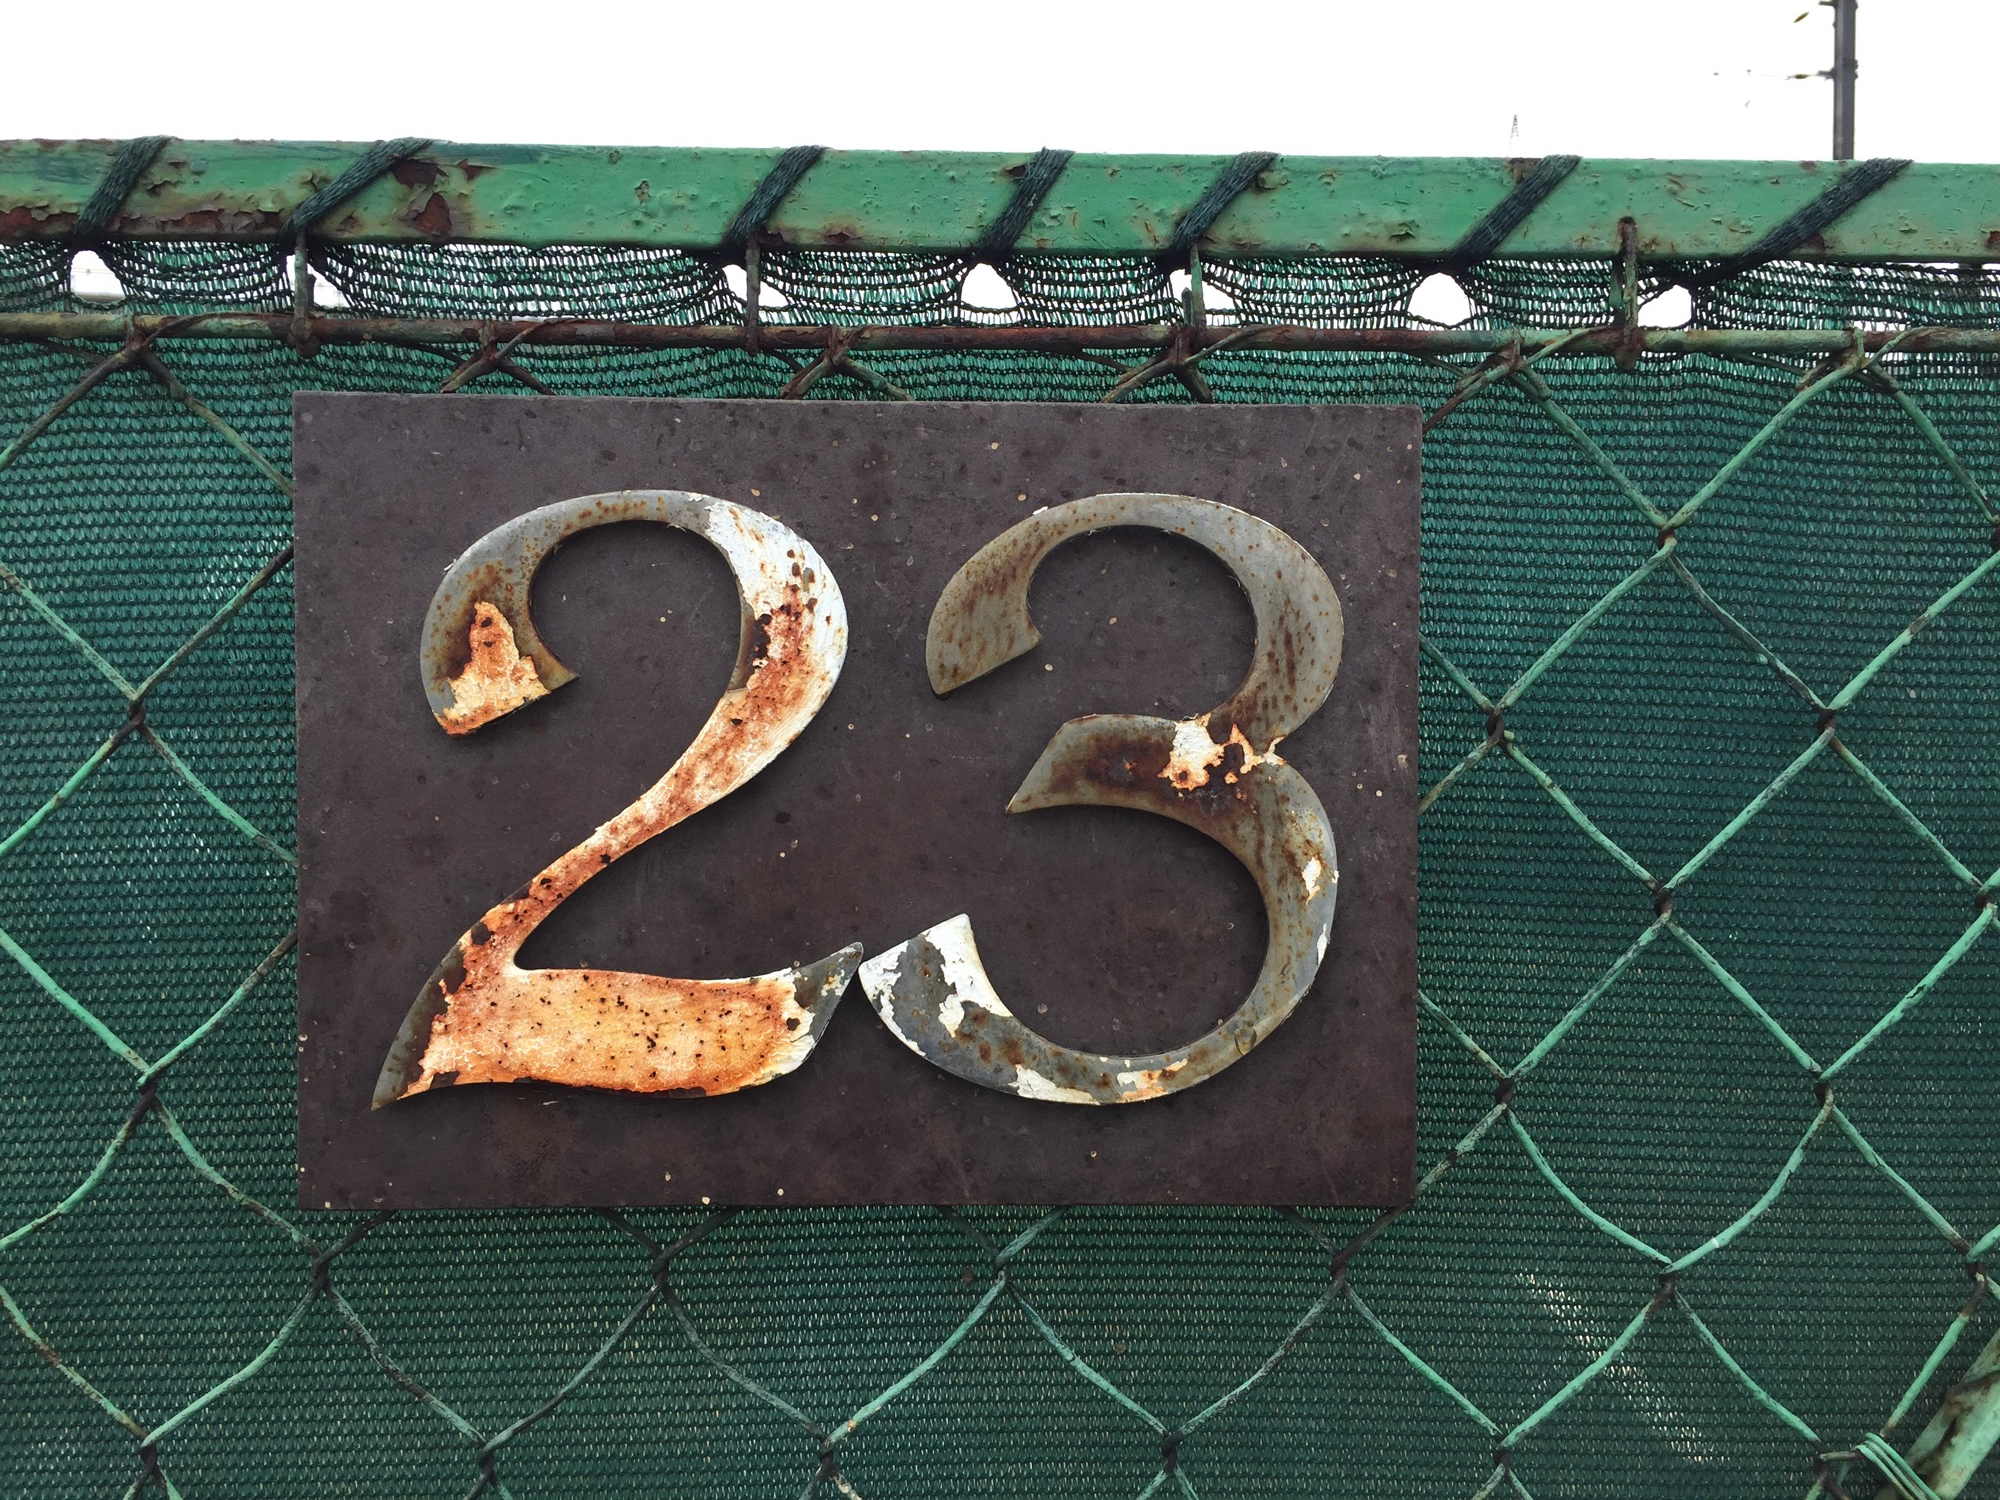 Hausnummer an der Eingangstür eines Kleingartens: 23, leicht angerostet